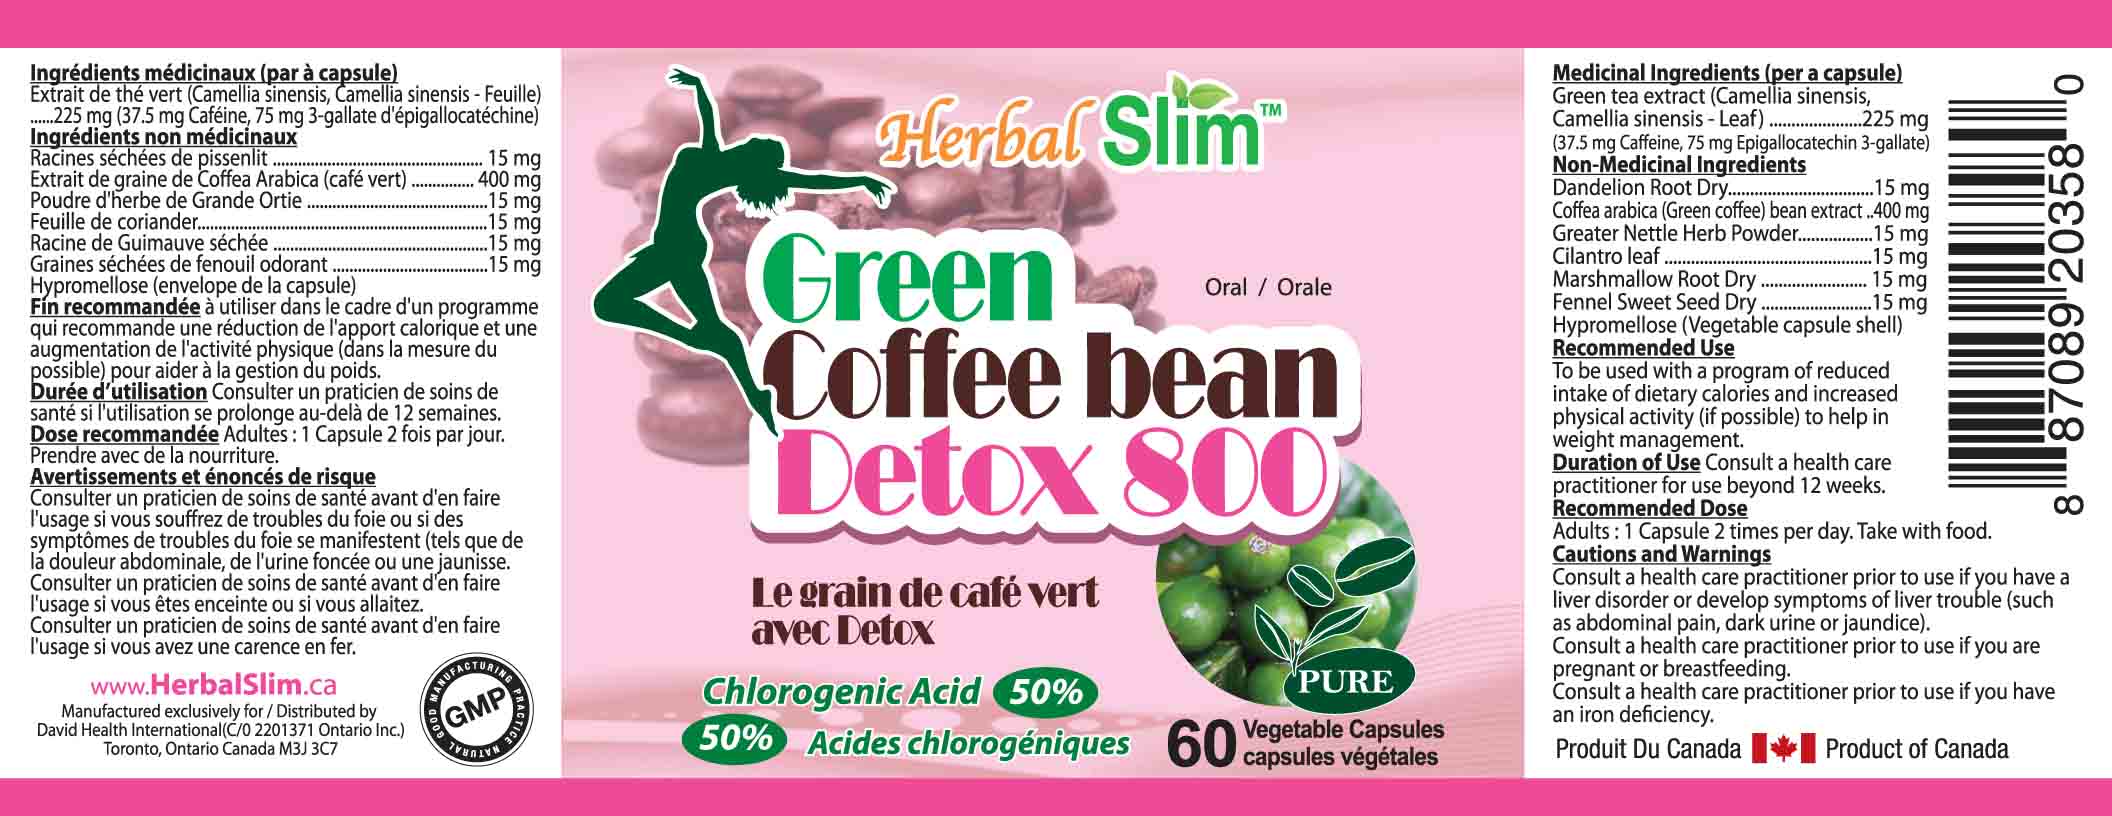 HerbalSlim GREEN COFFEE BEAN DETOX 800